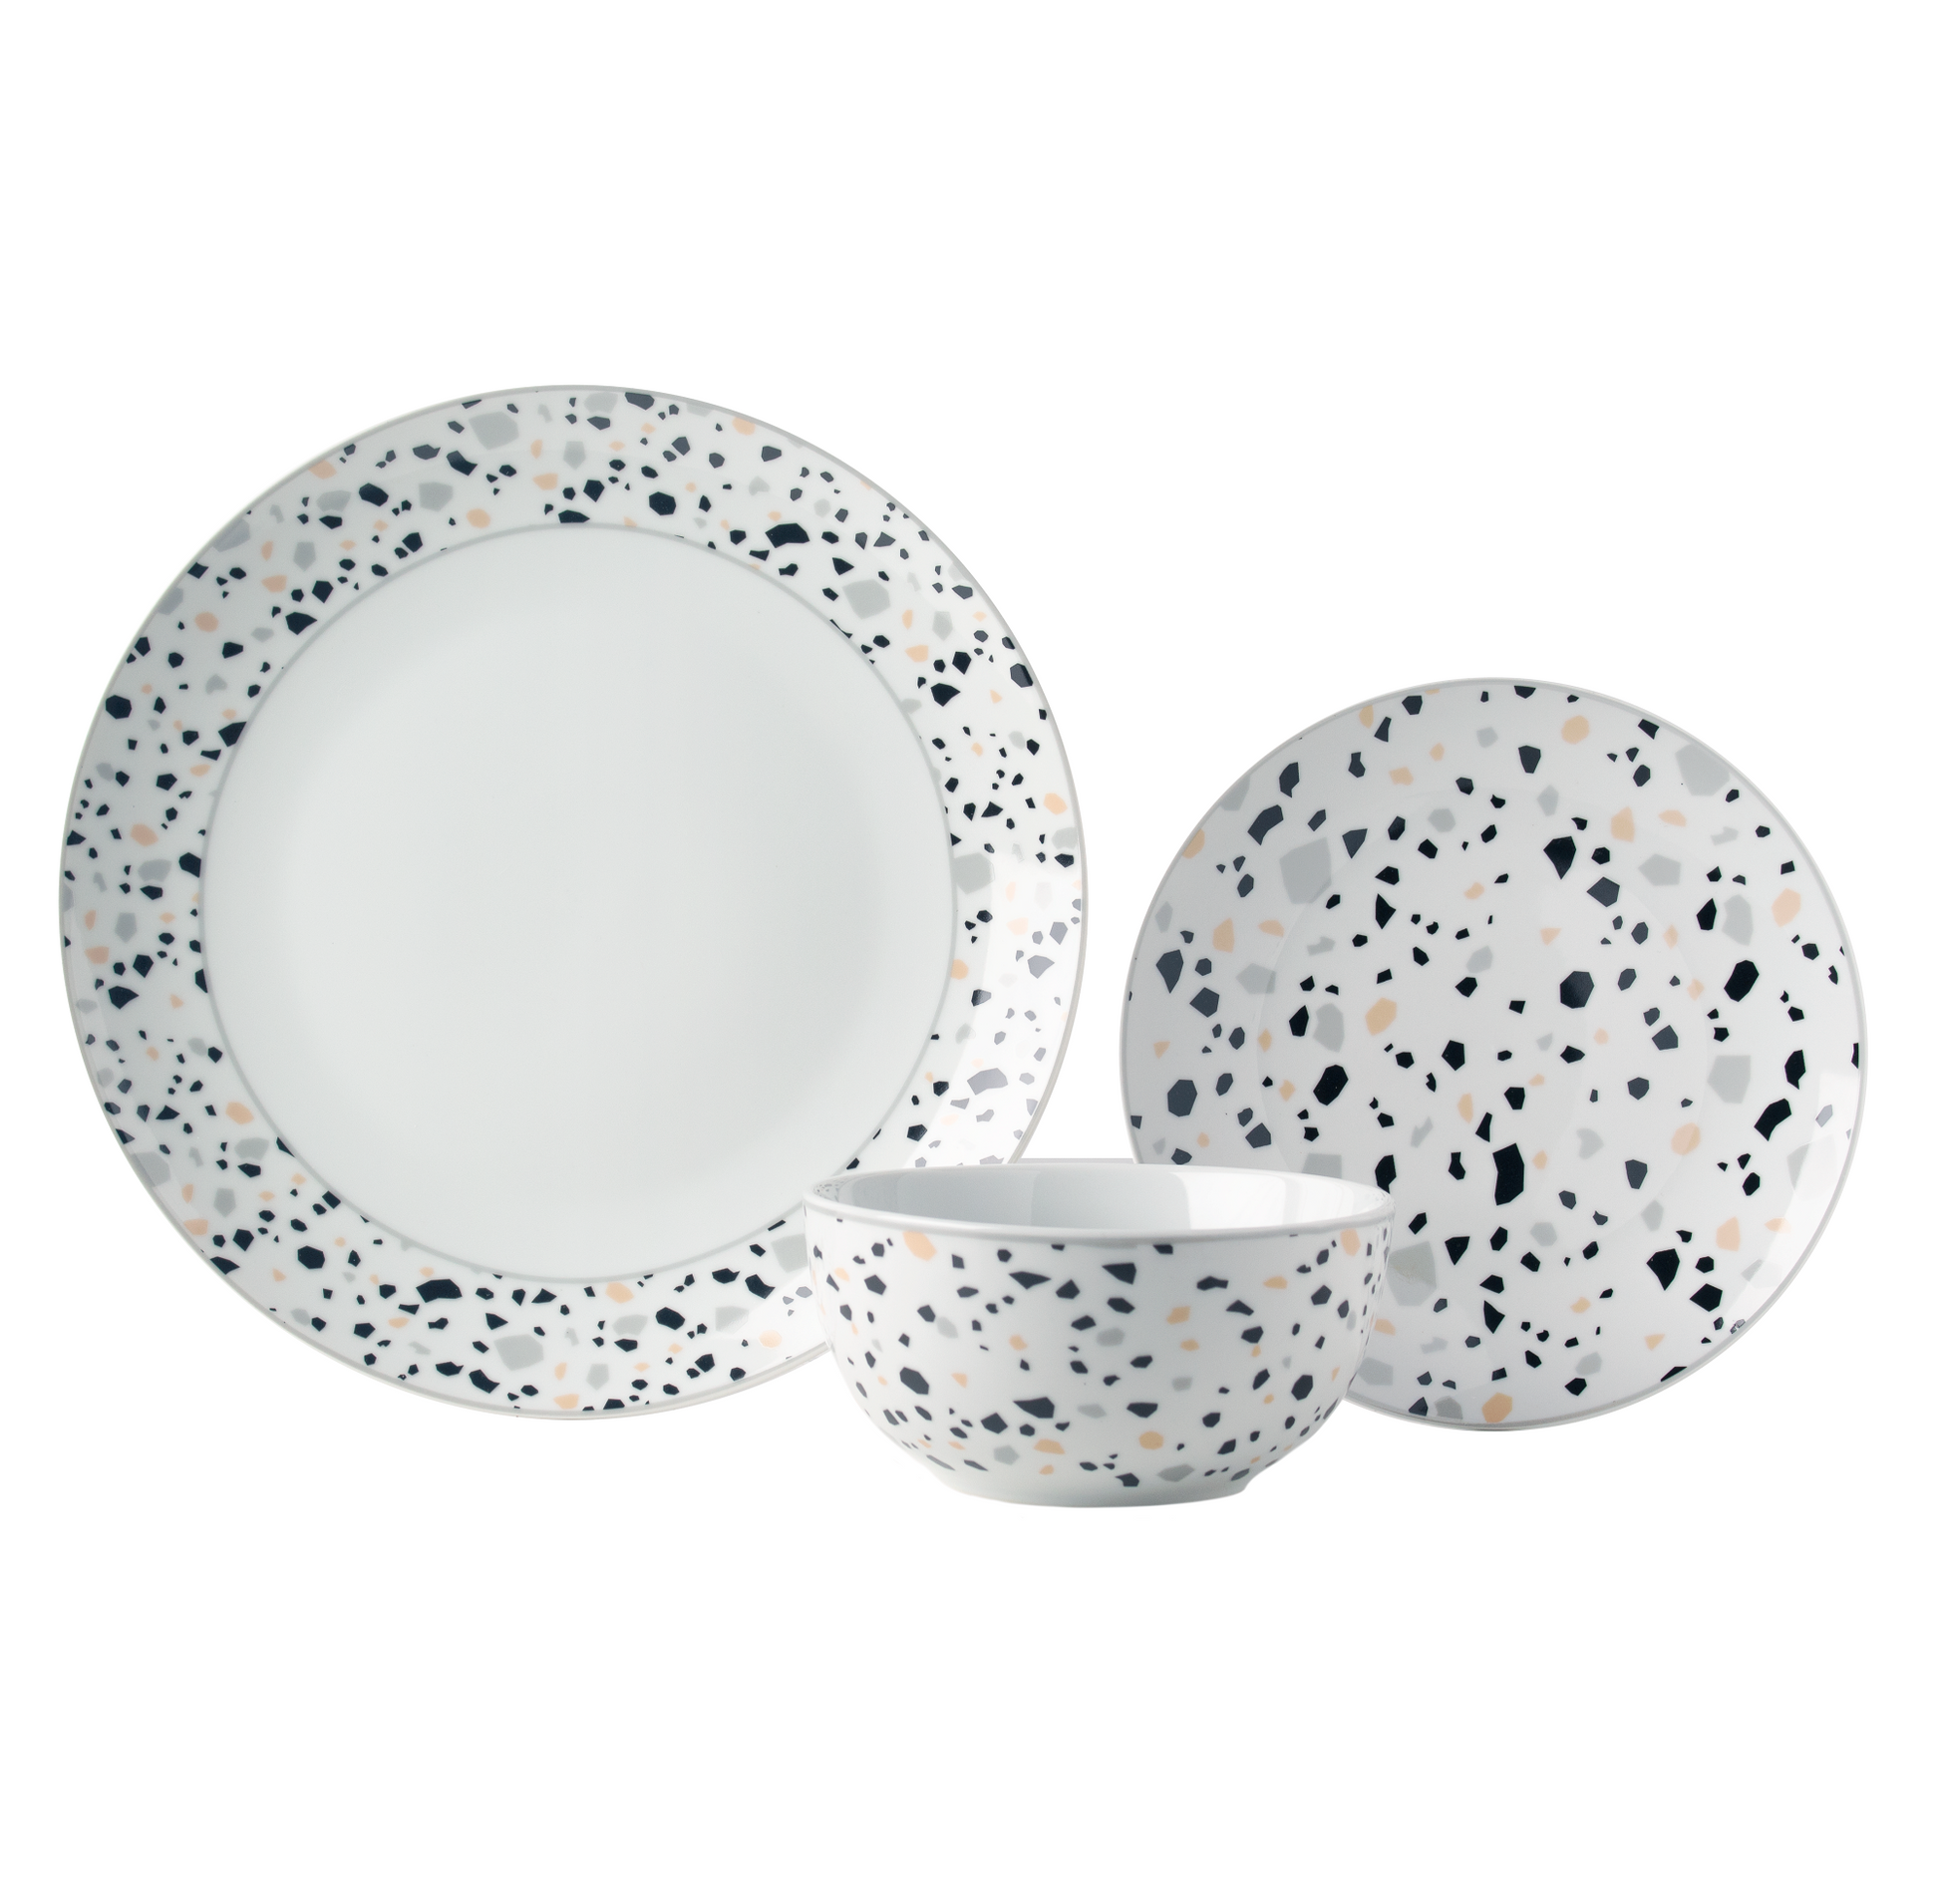 12pc Porcelain White Terazzo Design Dinner Set